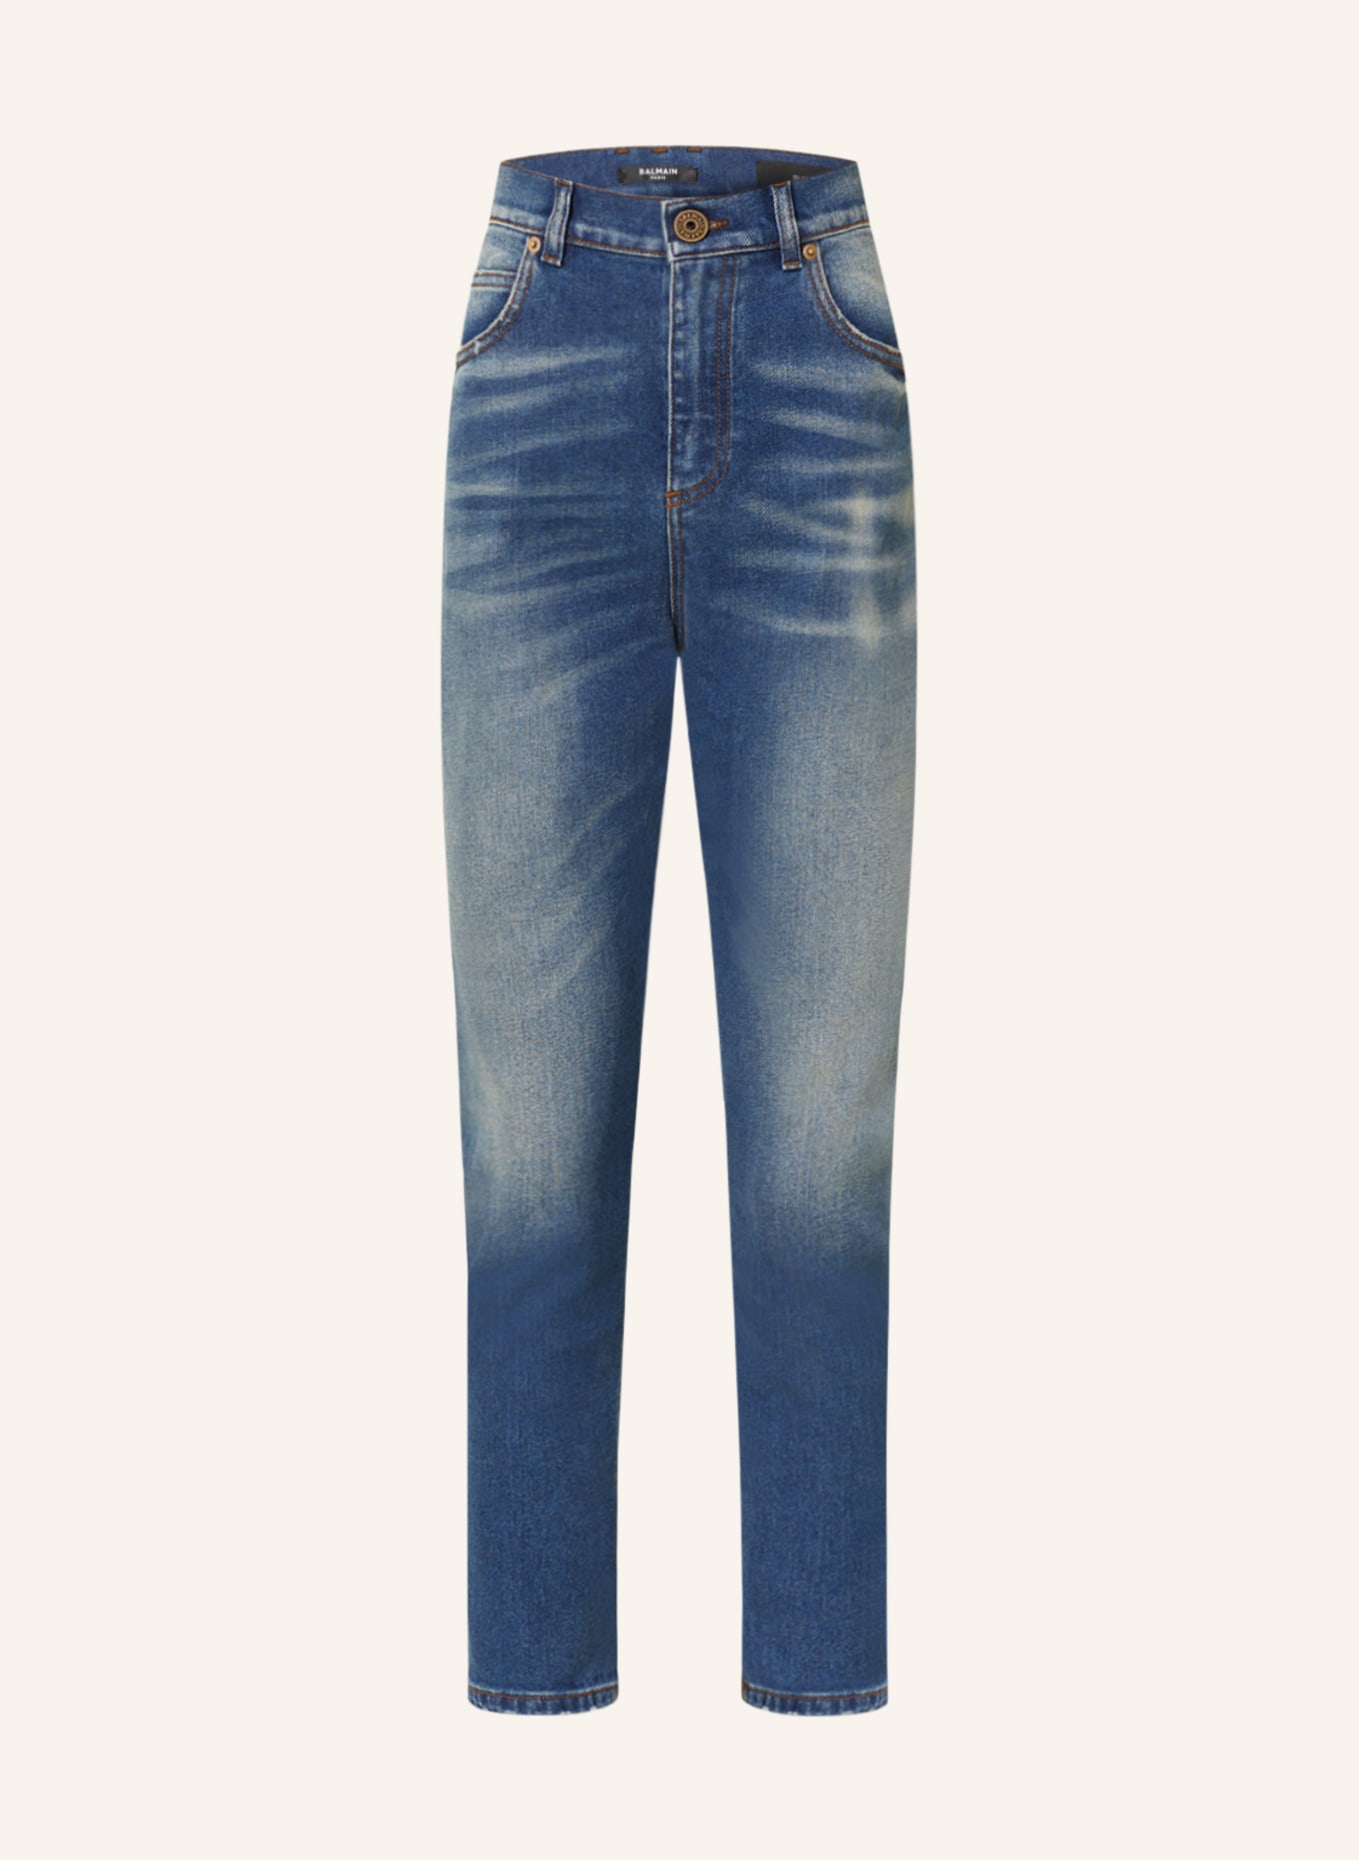 BALMAIN 7/8-Jeans, Farbe: 6FF 6FF Bleu jean (Bild 1)